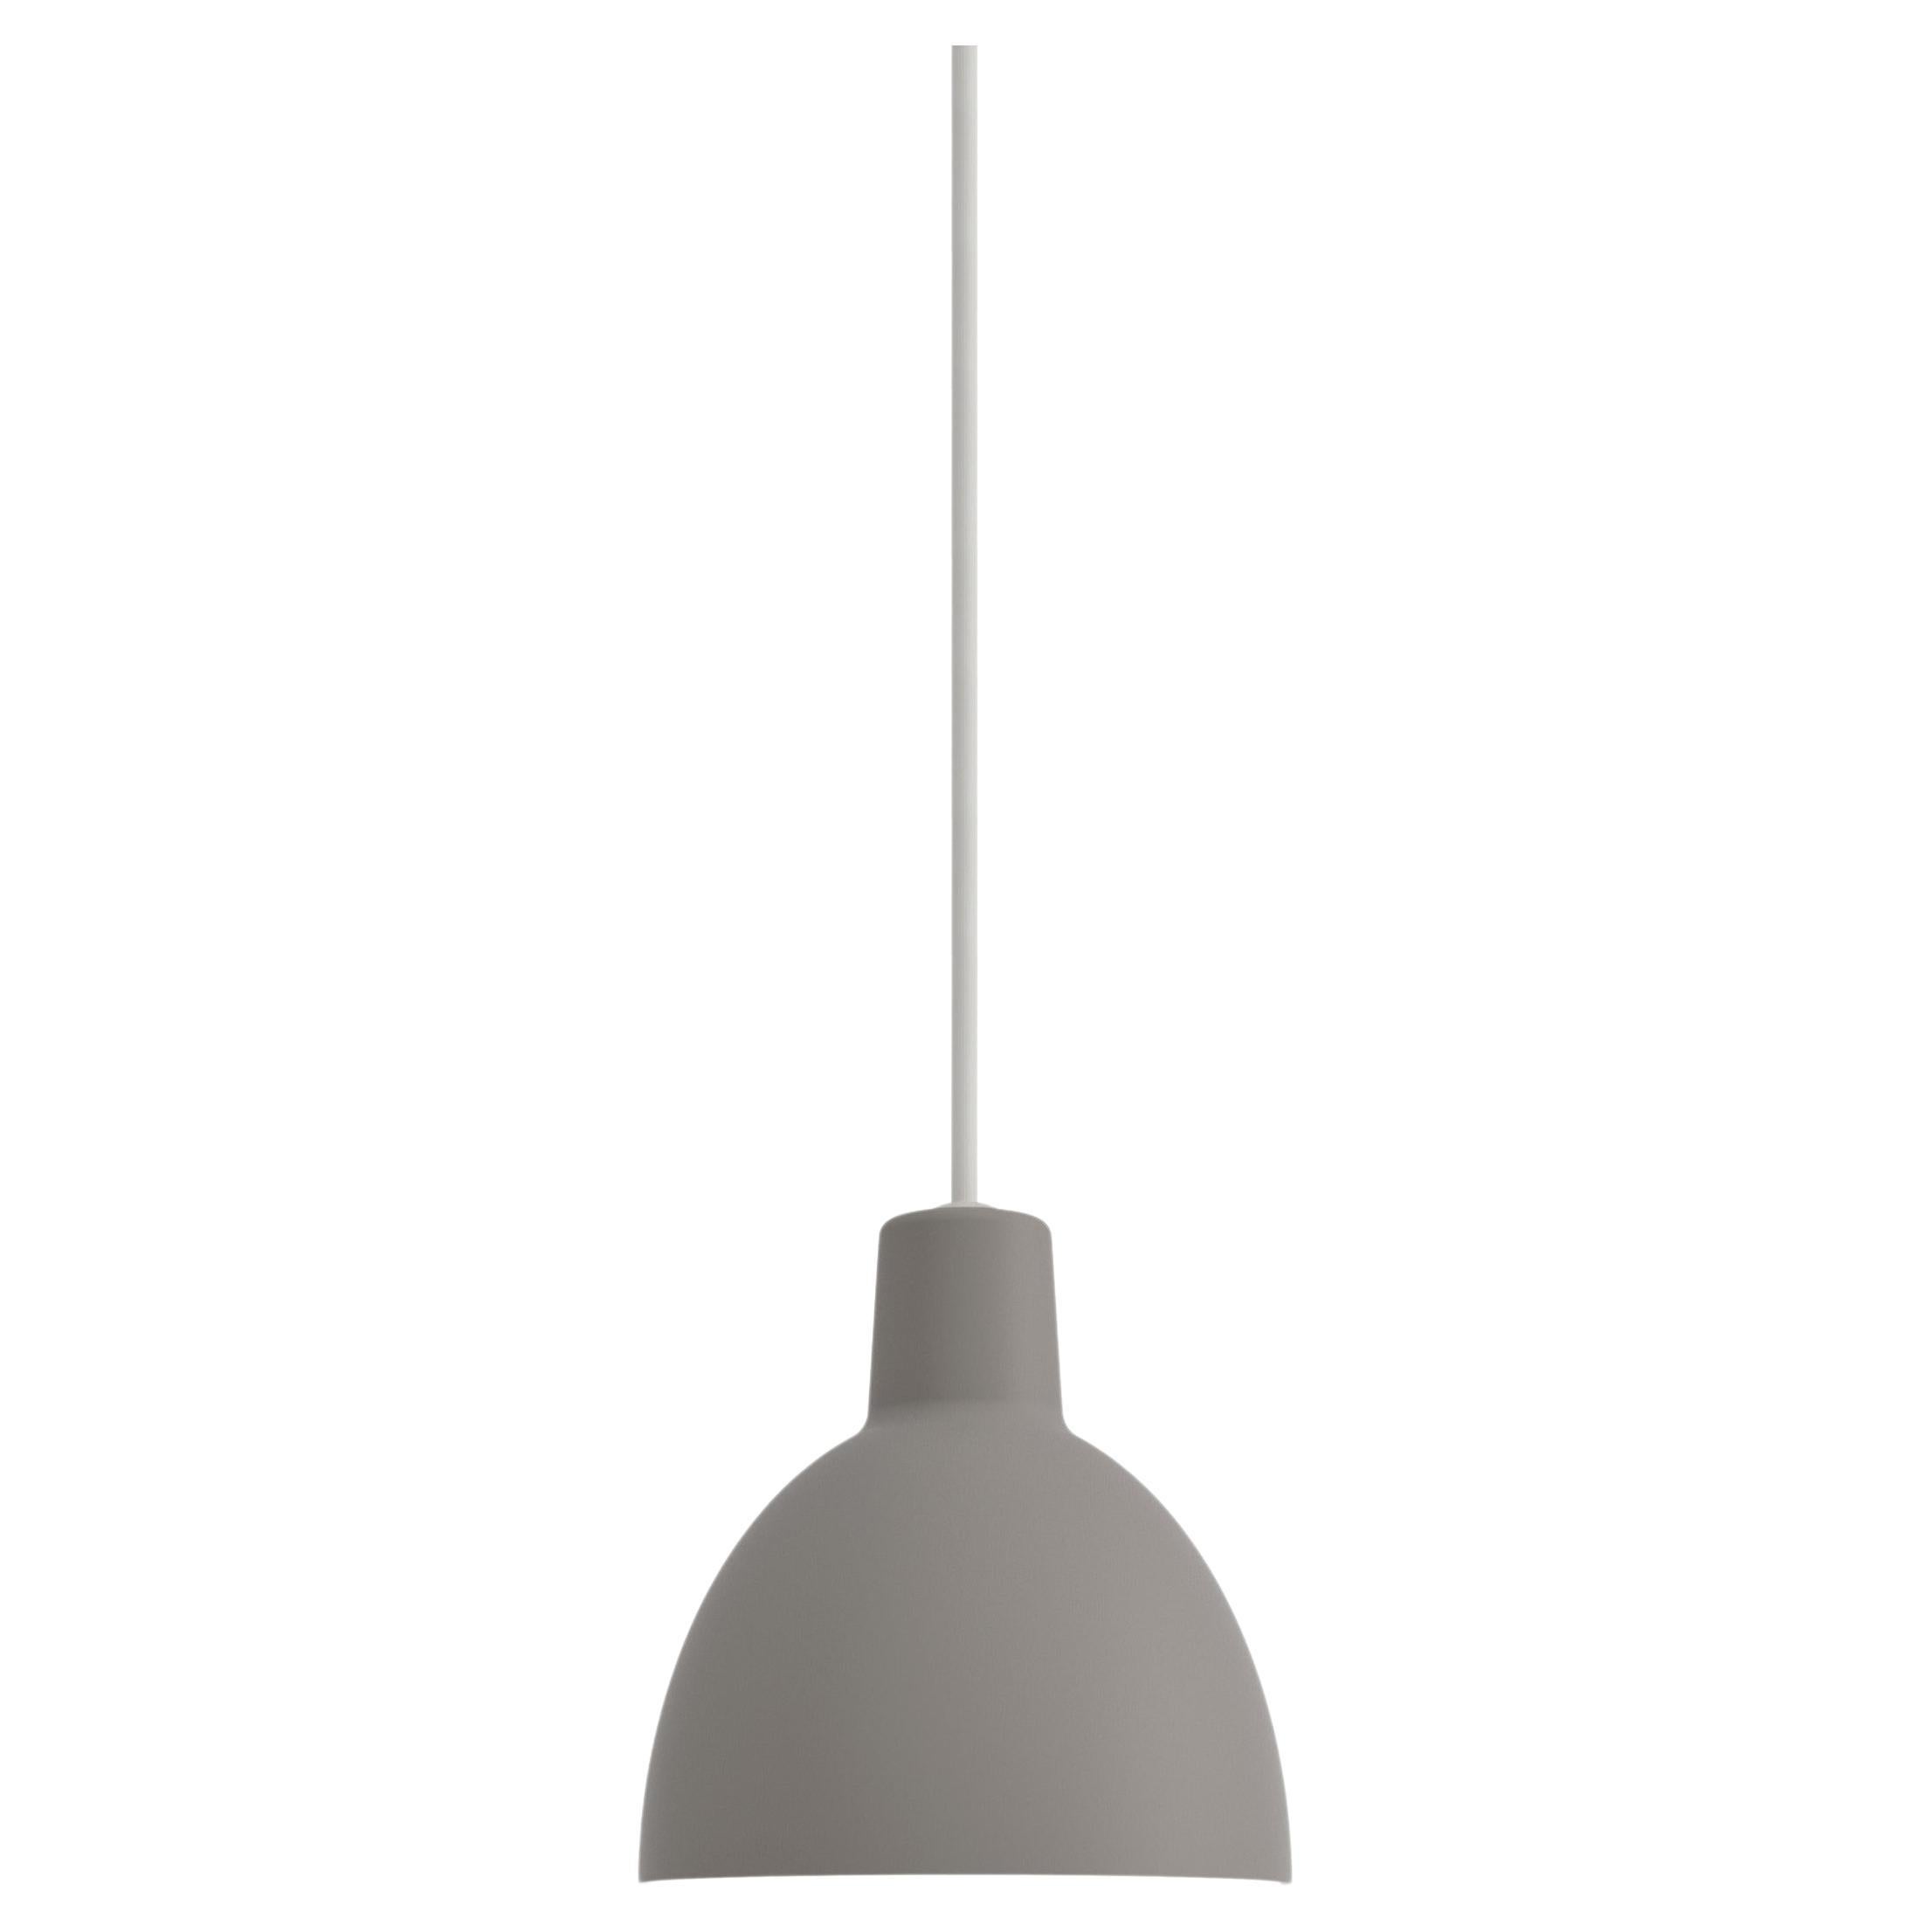 Toldbod 120 Pendant Lamp in Gray by Louis Poulsen